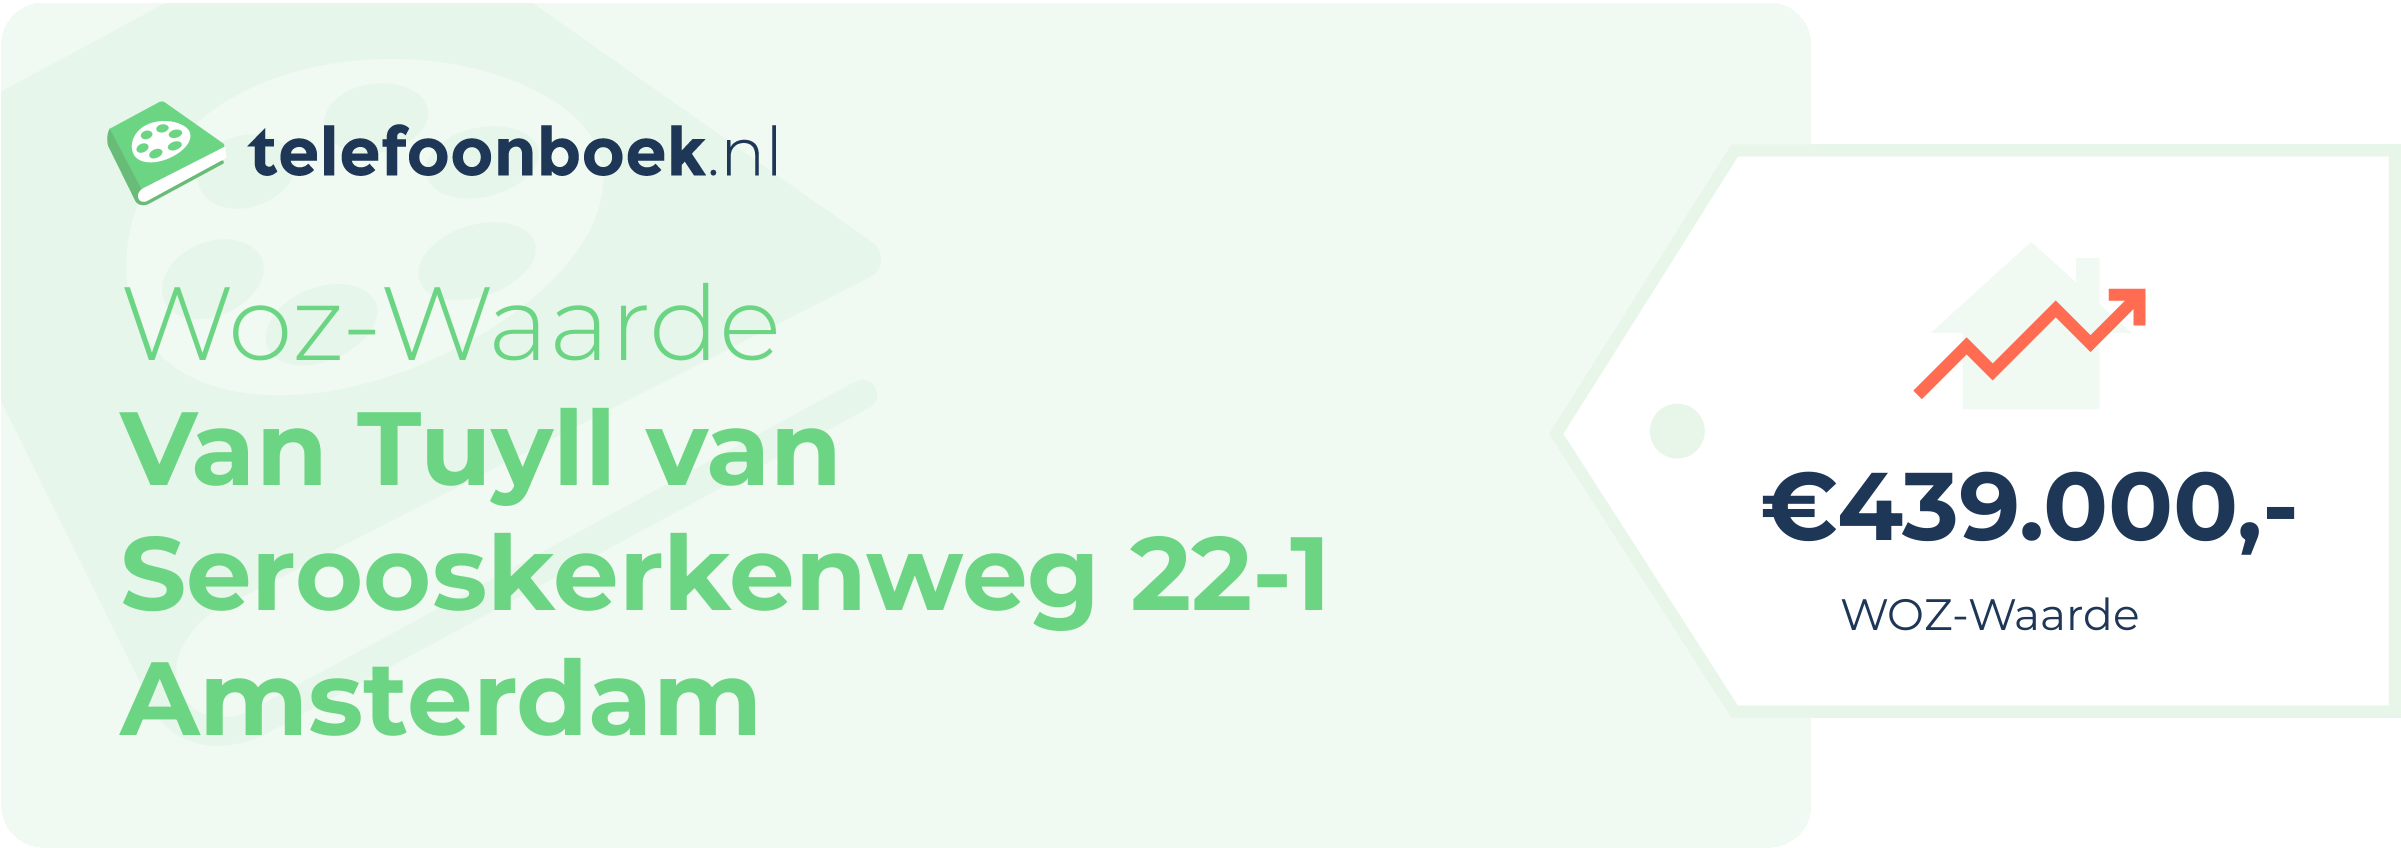 WOZ-waarde Van Tuyll Van Serooskerkenweg 22-1 Amsterdam